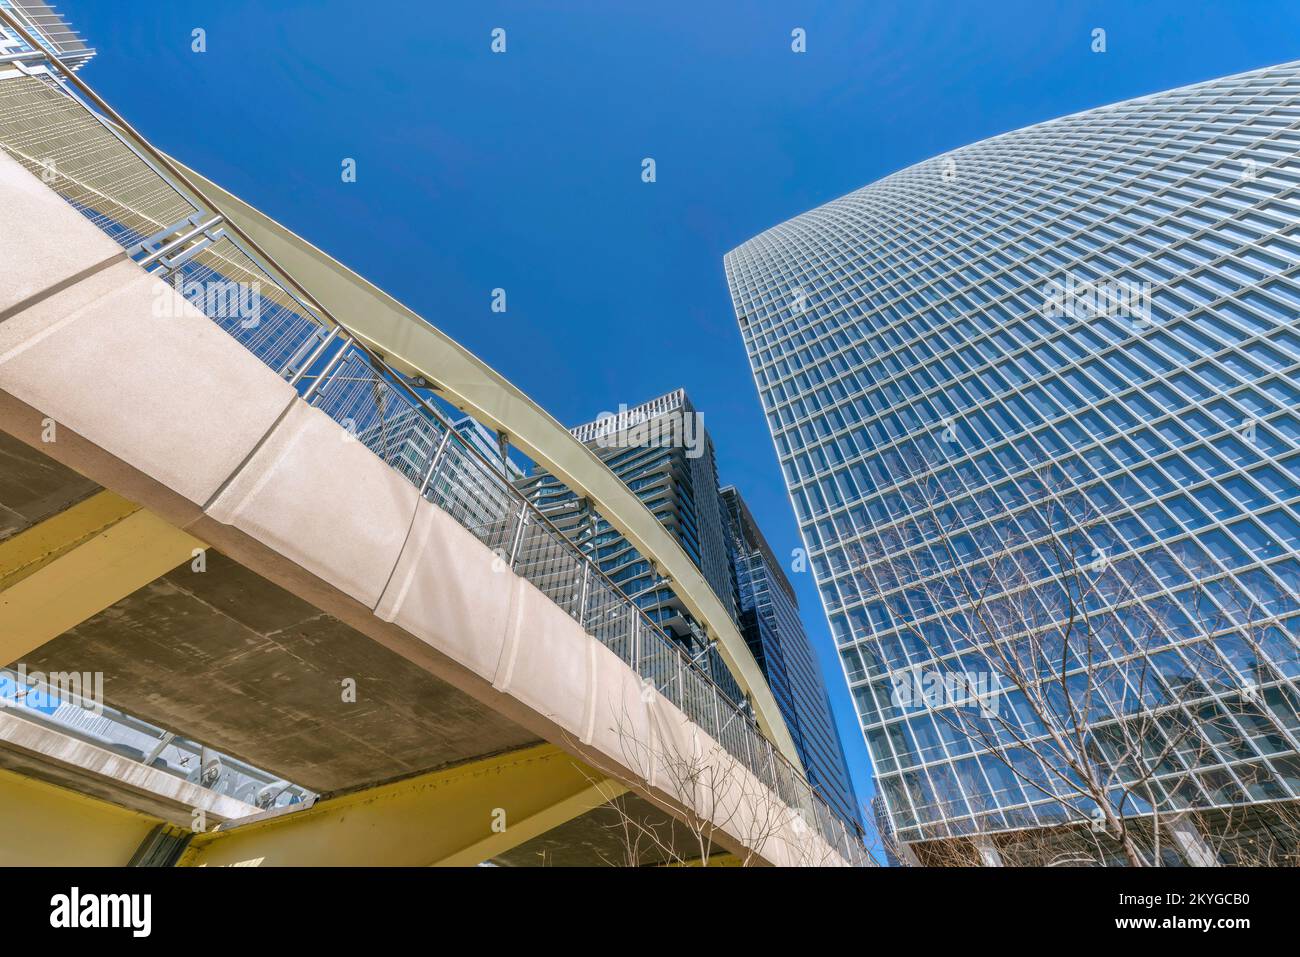 Austin, Texas - Blick auf eine Brücke zwischen zwei modernen Gebäuden von unten. Es gibt einen Blick auf die Brücke auf der linken Seite zu einem modernen Gebäude mit g Stockfoto